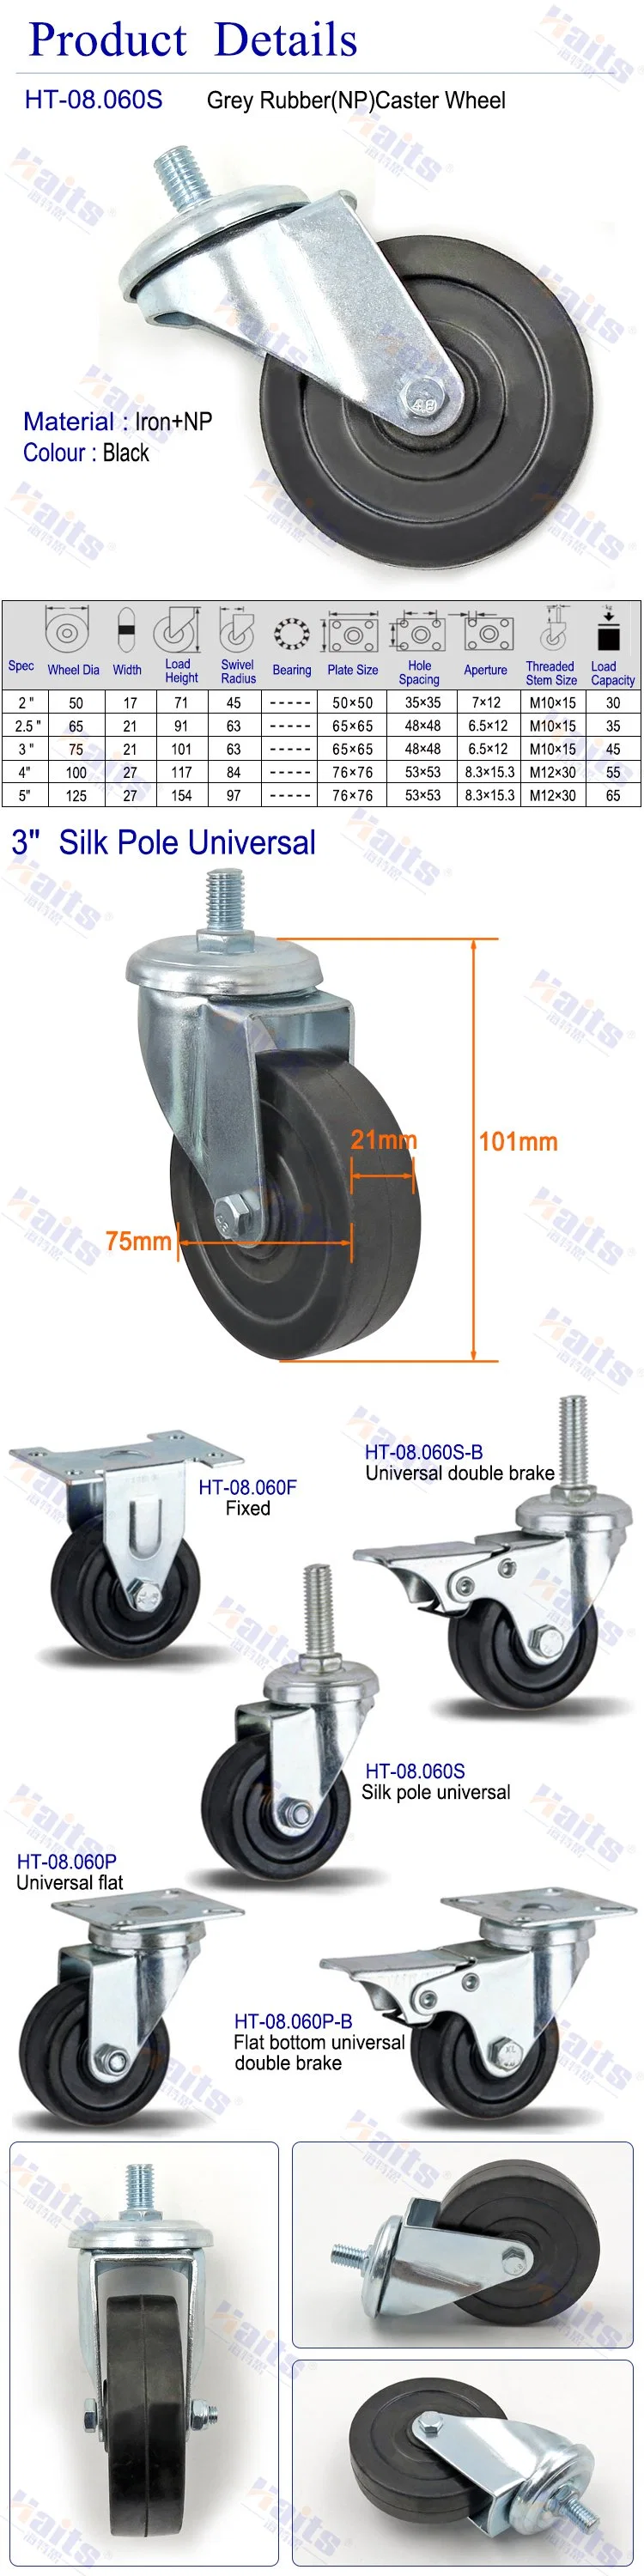 High Load Industrial Cart Caster Wheel Threaded Stem Rigid Caster